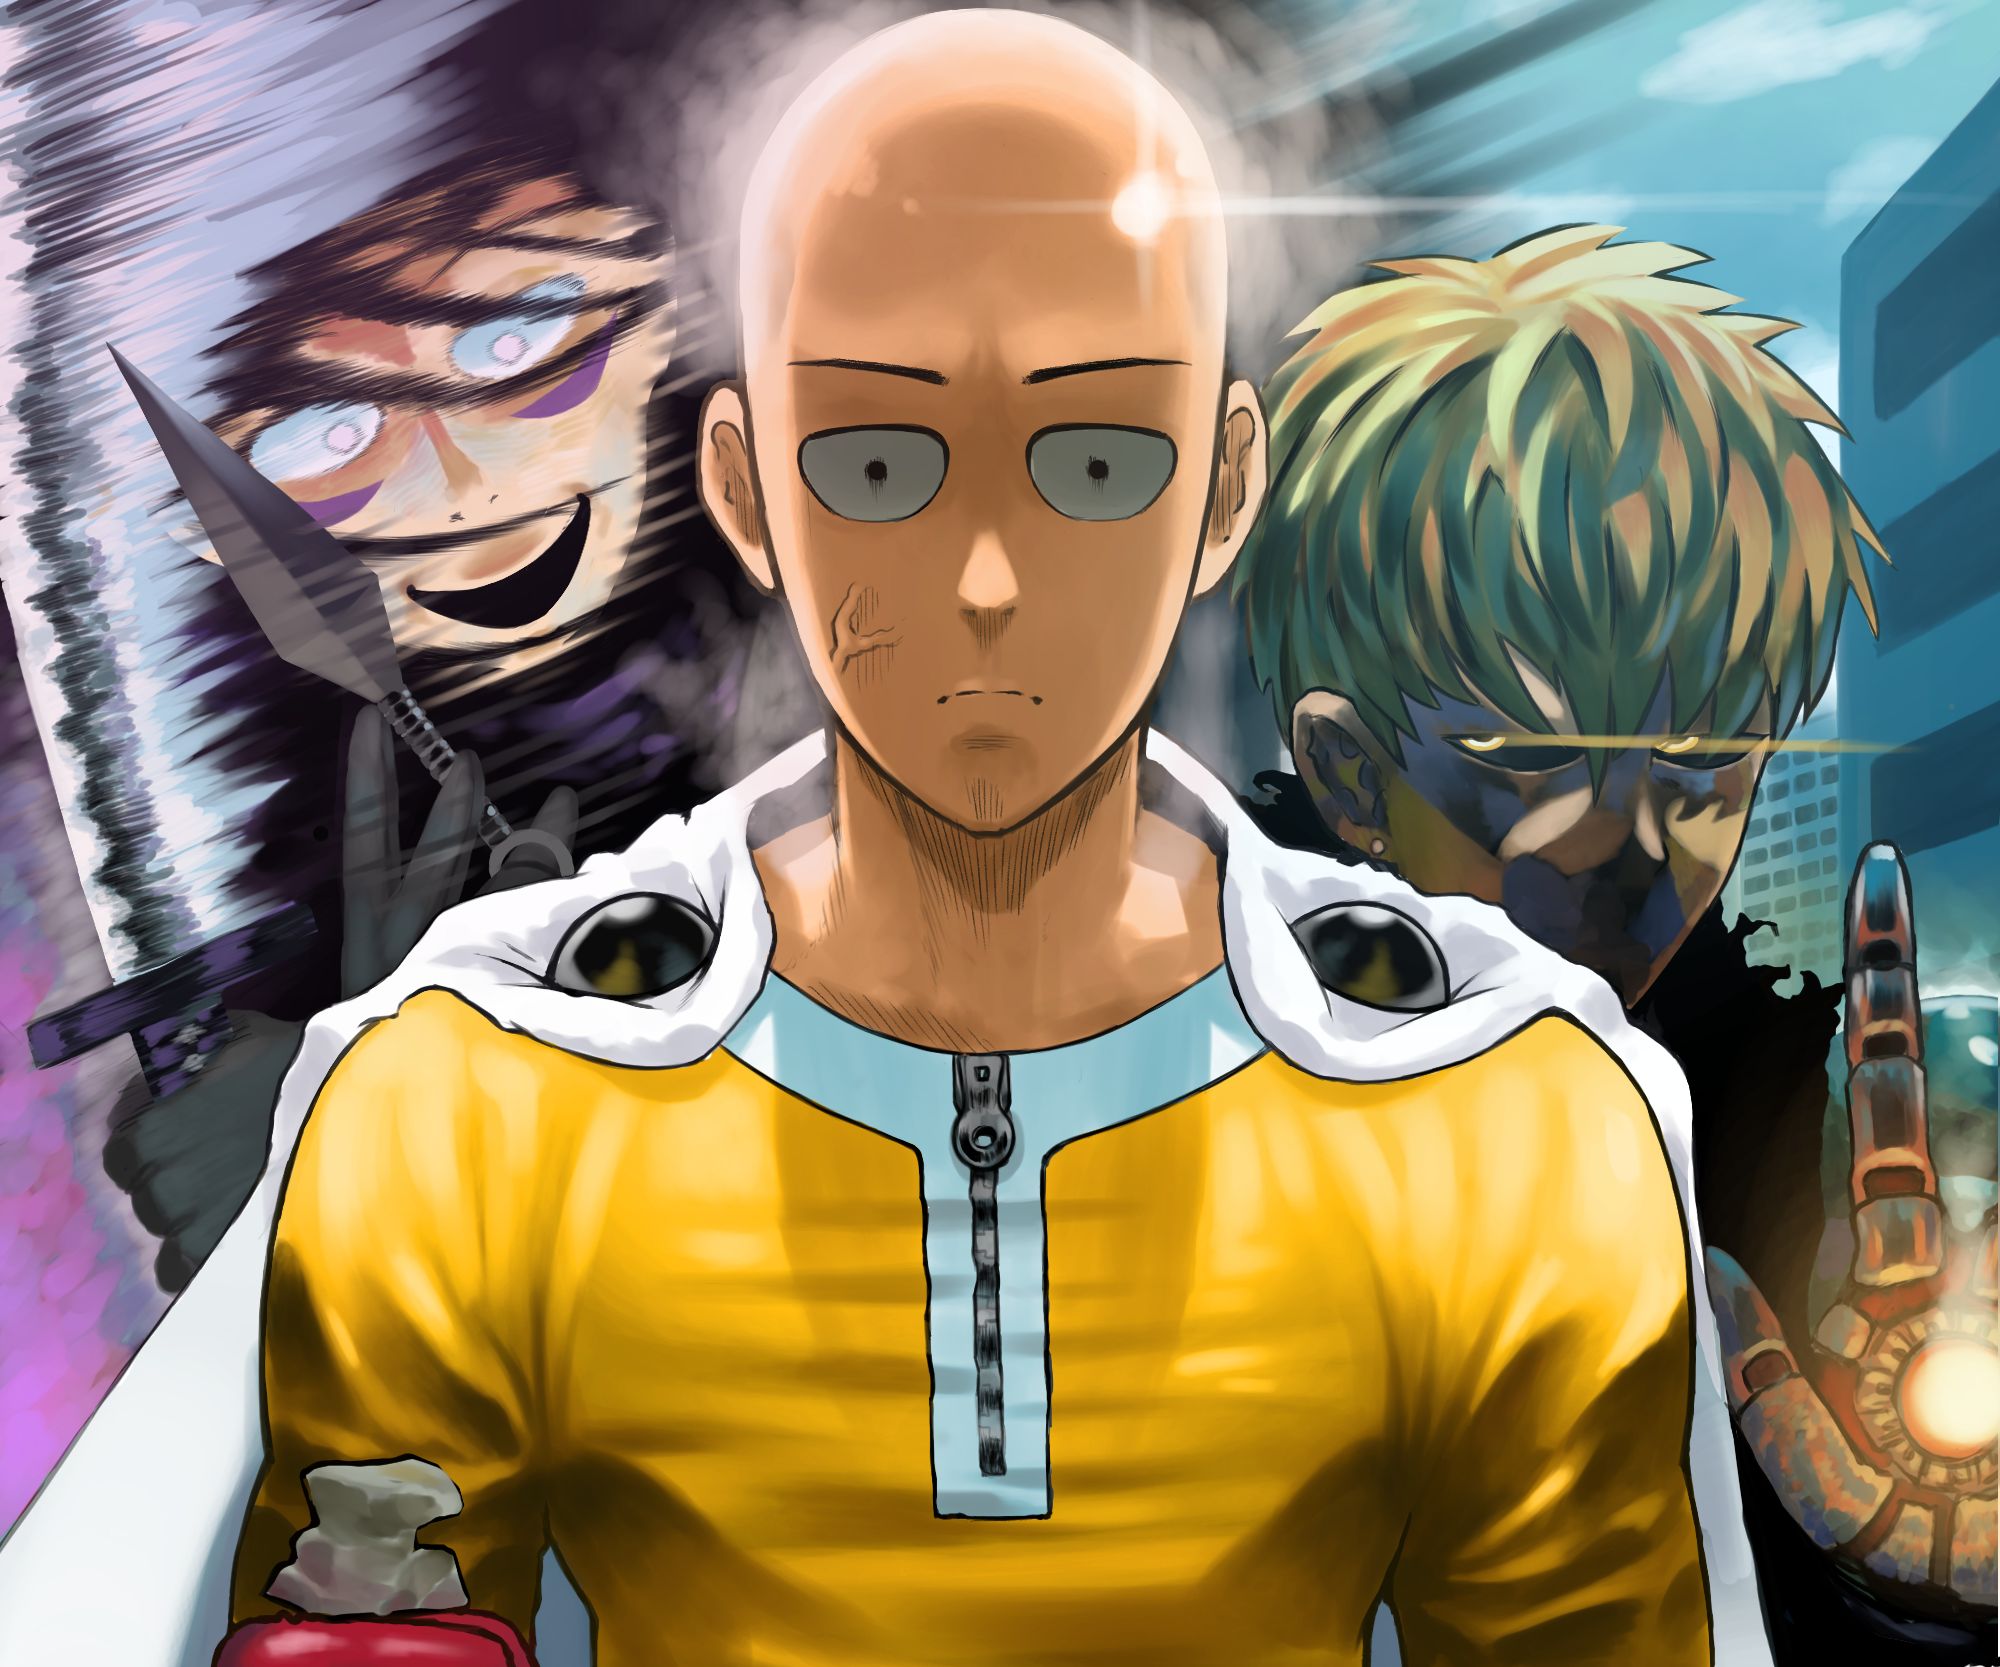 Descarga gratuita de fondo de pantalla para móvil de Animado, Saitama (Hombre De Un Solo Golpe), One Punch Man, Genos (Hombre De Un Solo Golpe), Sonic (Hombre De Un Solo Golpe).